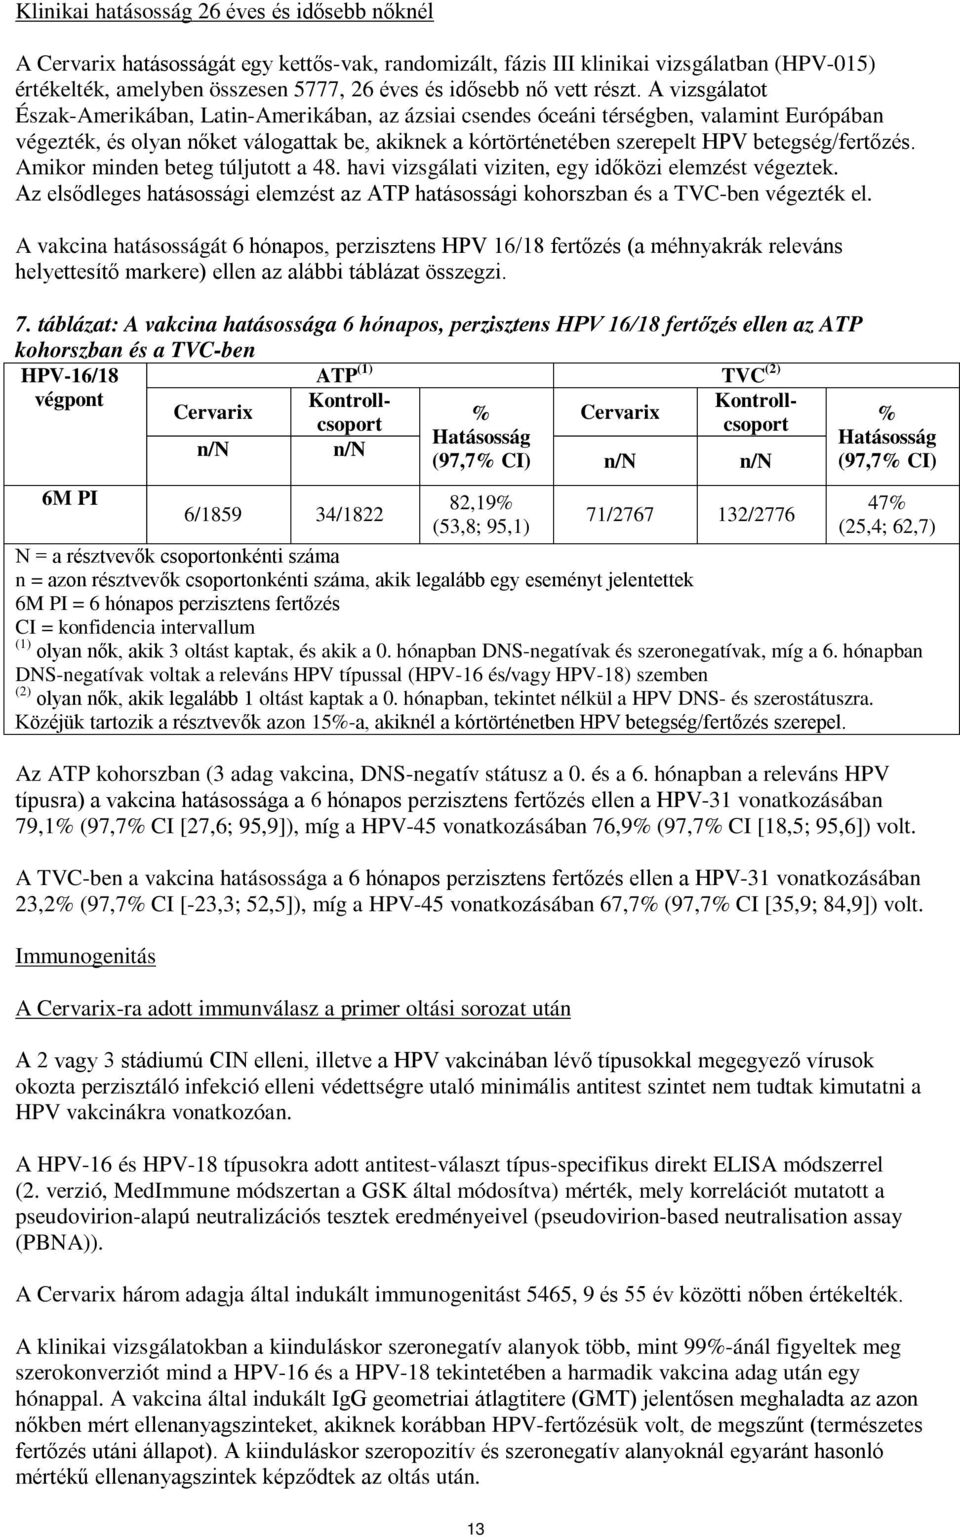 A Gardasil alternatív ütemterveinek immunogenitása és reaktogenitása - Hpv vakcina adagolási rendje